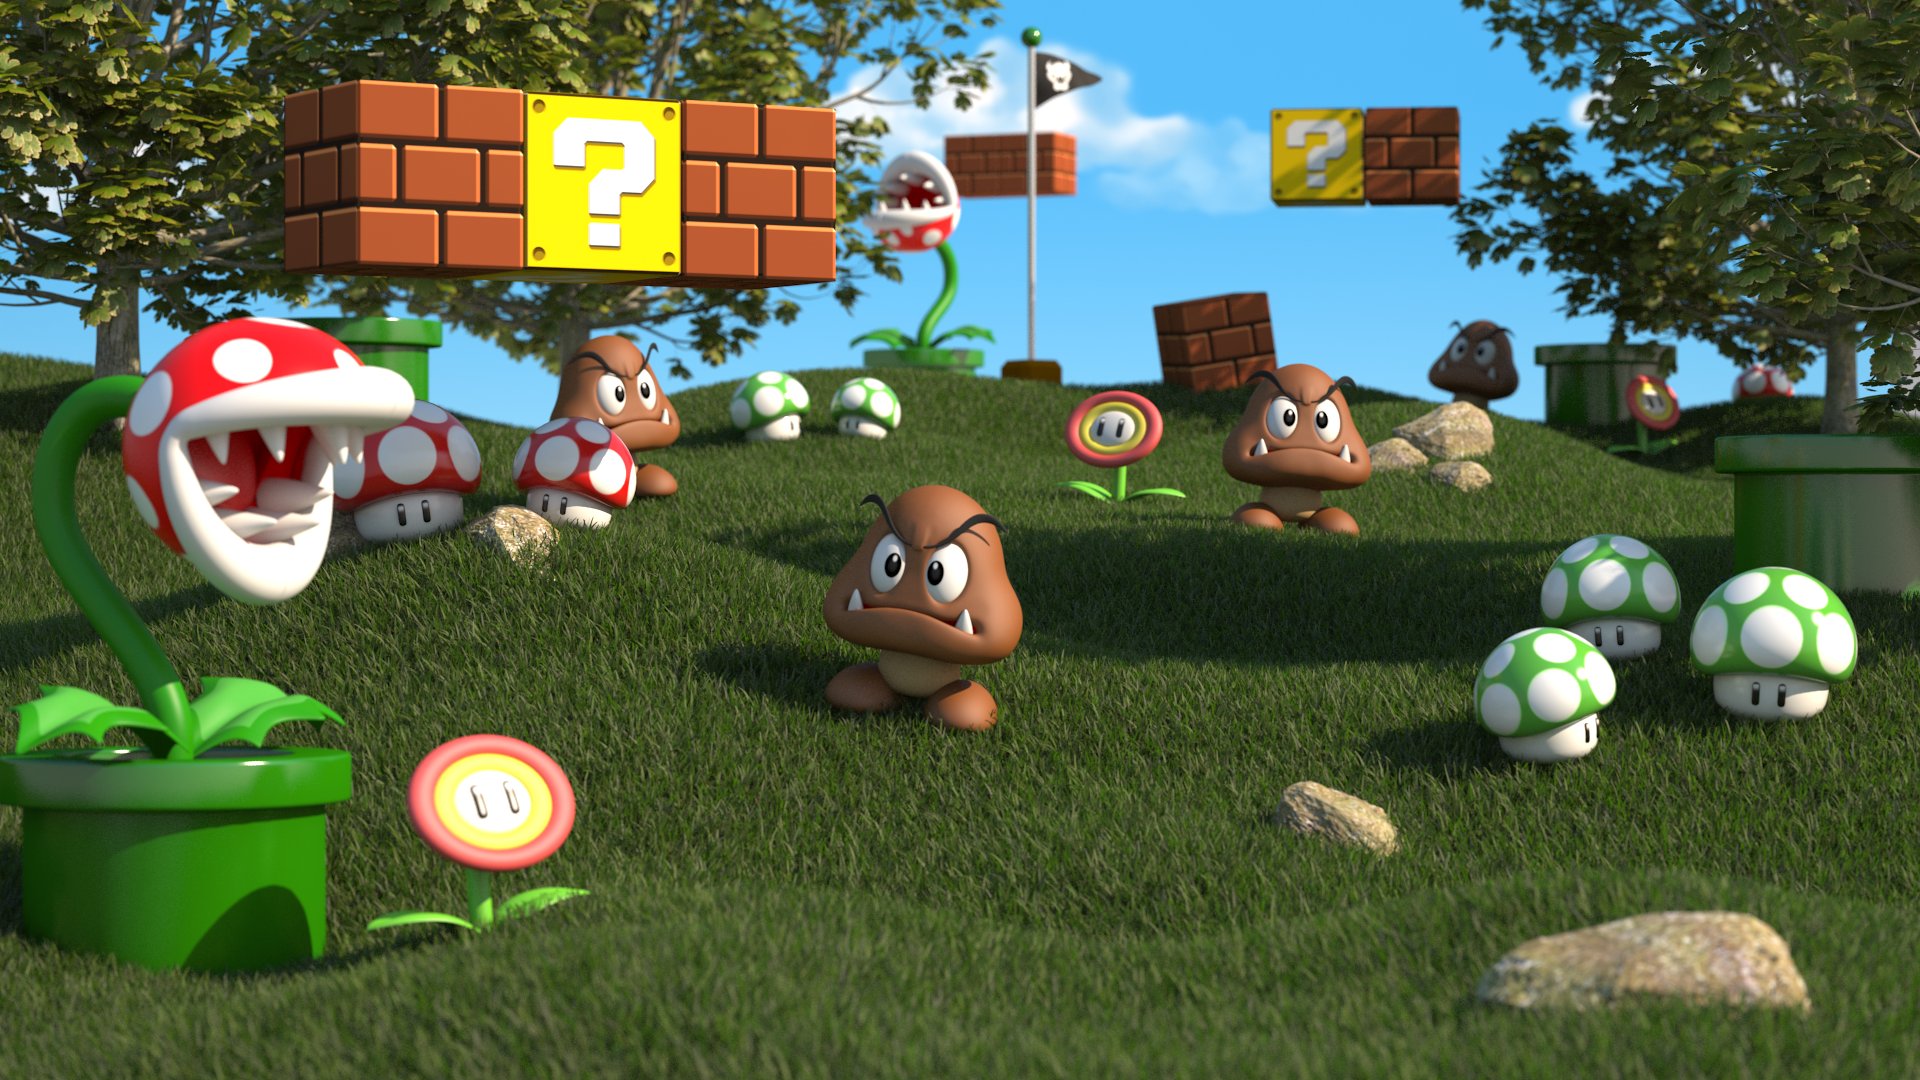 Jeux Vidéo Super Mario 3D Land Fond d'écran HD | Image